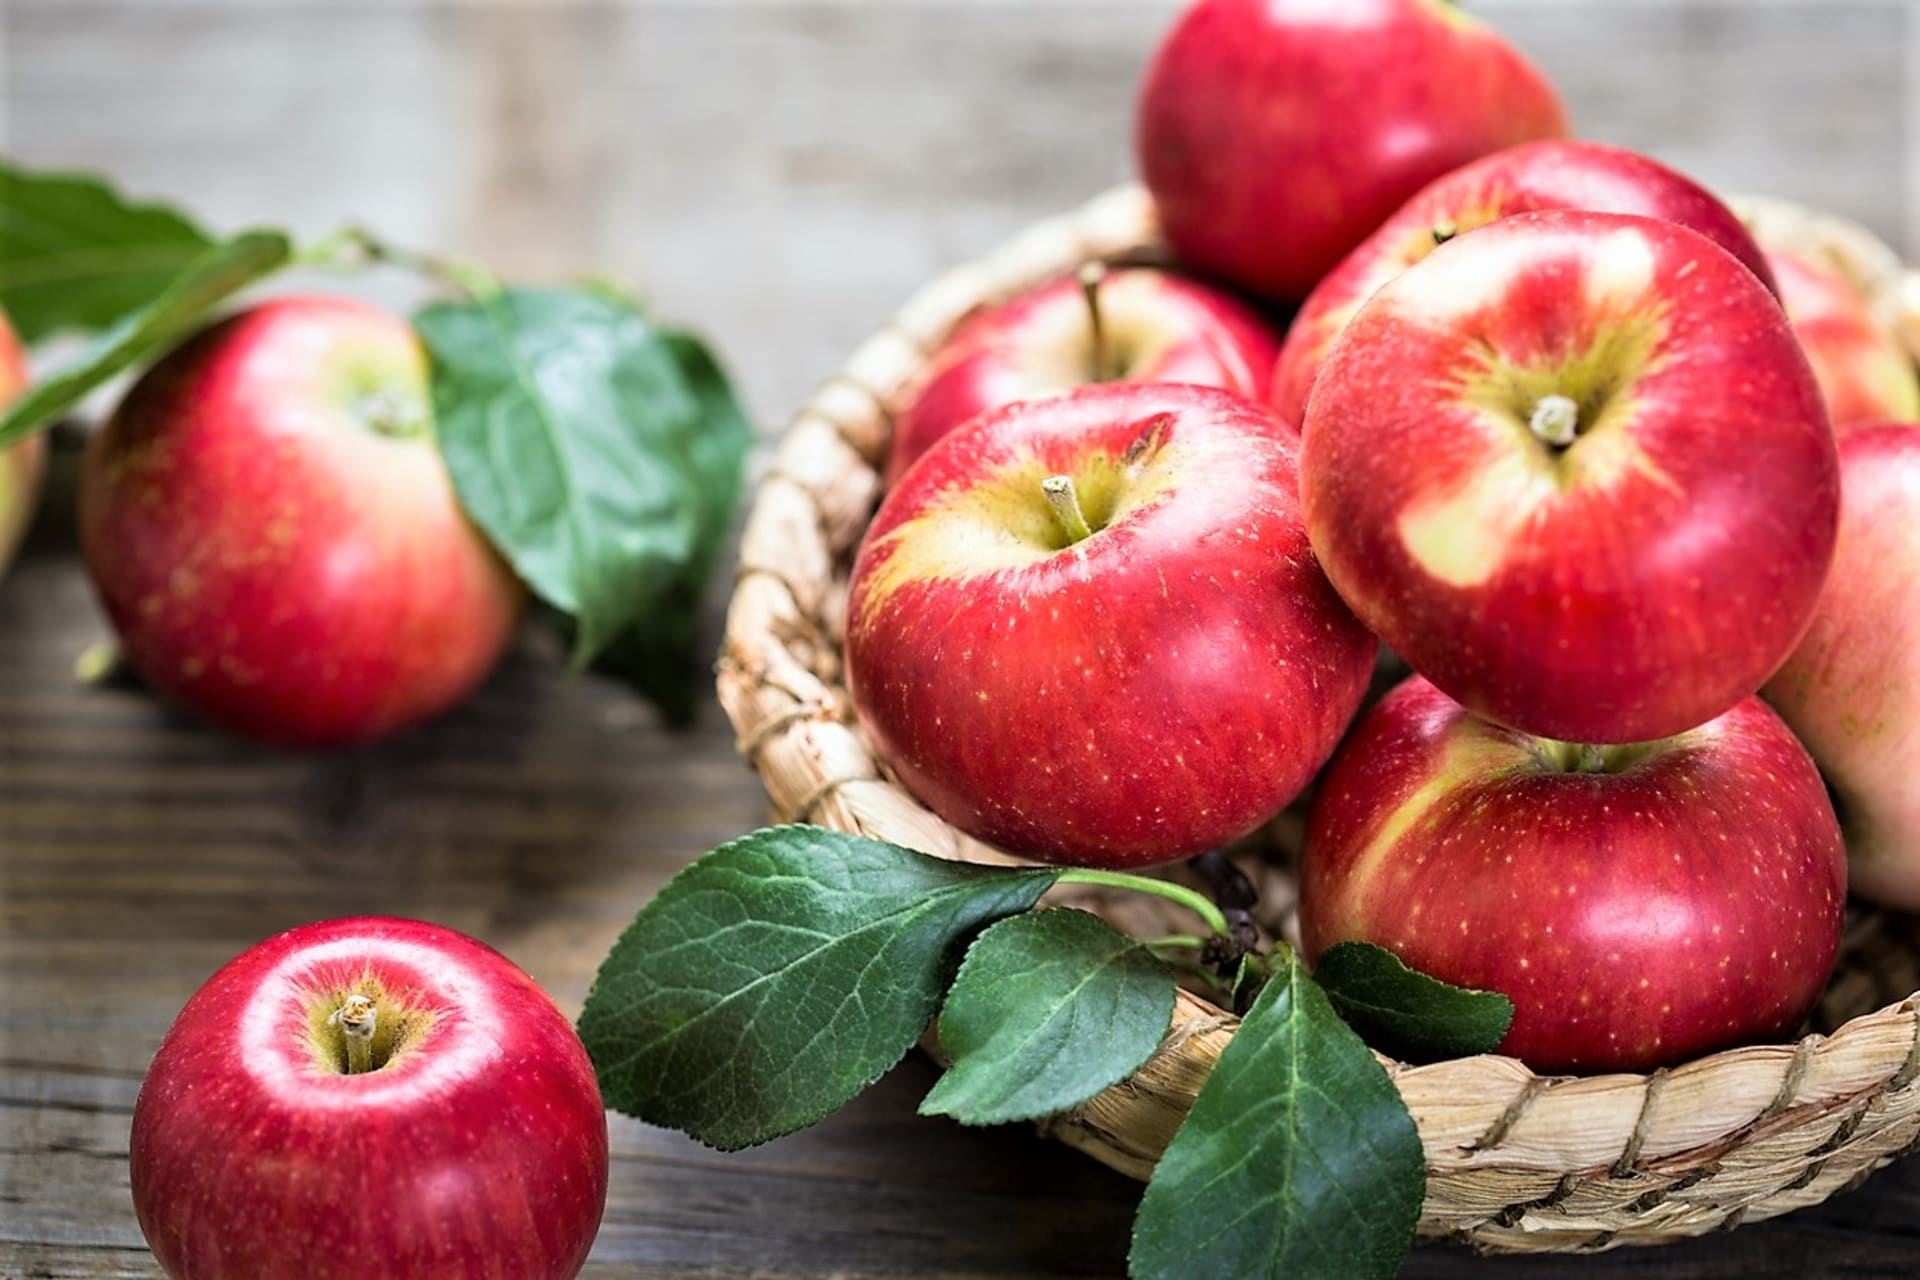 Jablka sklízíme od konce léta do listopadu, protože existuje nespočet odrůd jabloně domácí (Malus domestica) a každá má svůj čaj sklizně.